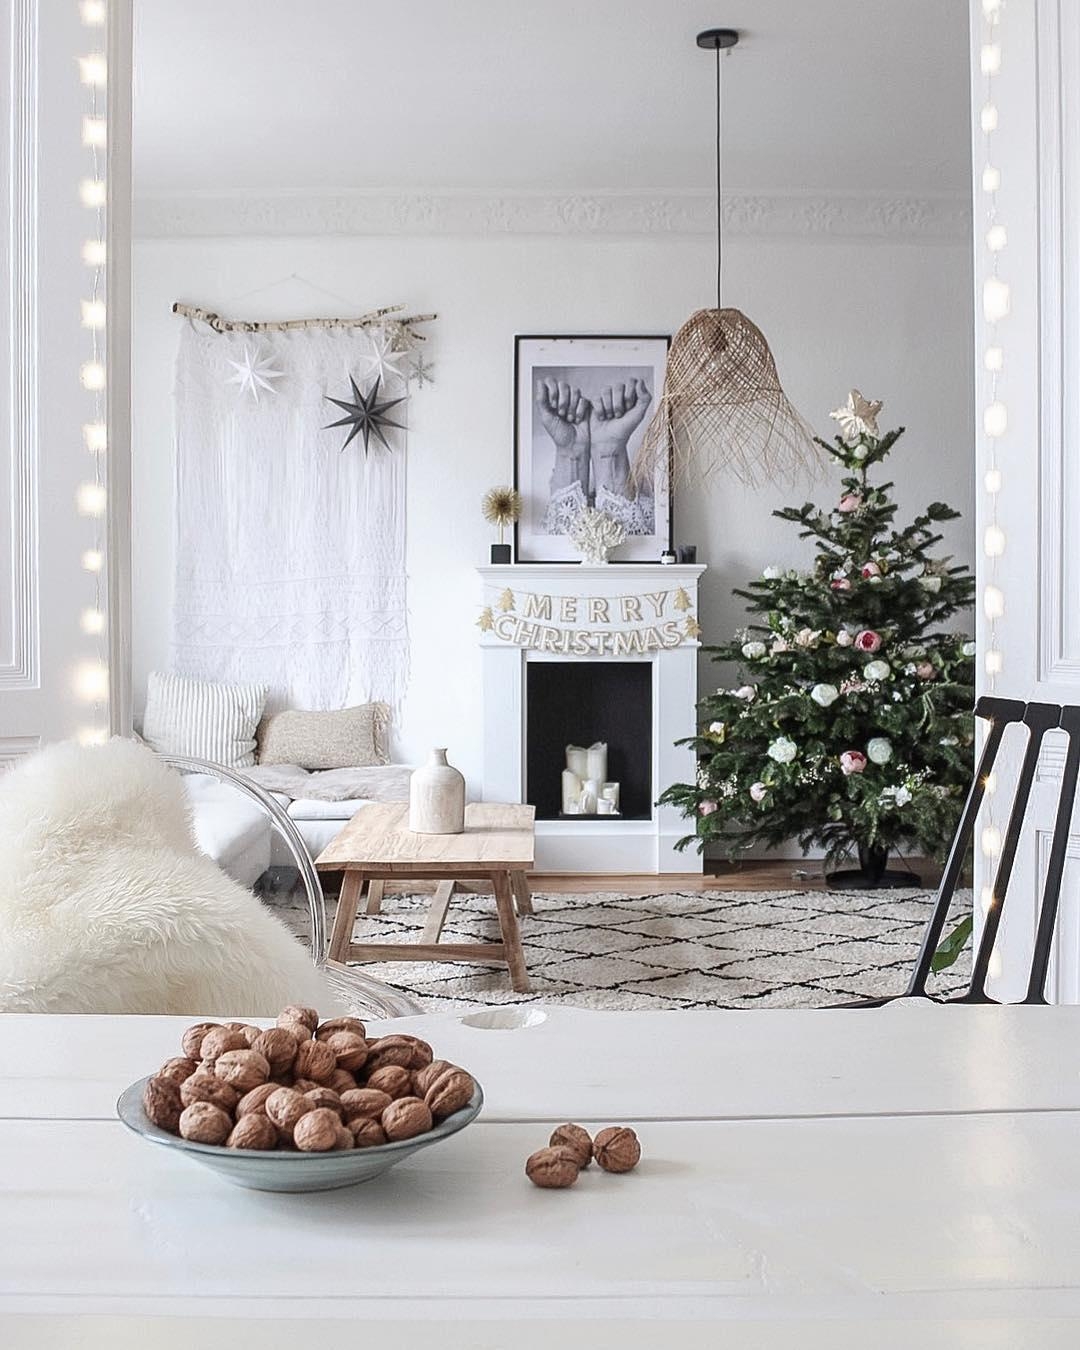 Ein Blick in unser weihnachtliches #Wohnzimmer. 

#weihnachtsbaum #christmas #weihnachten #weihnachtsdeko #whiteliving